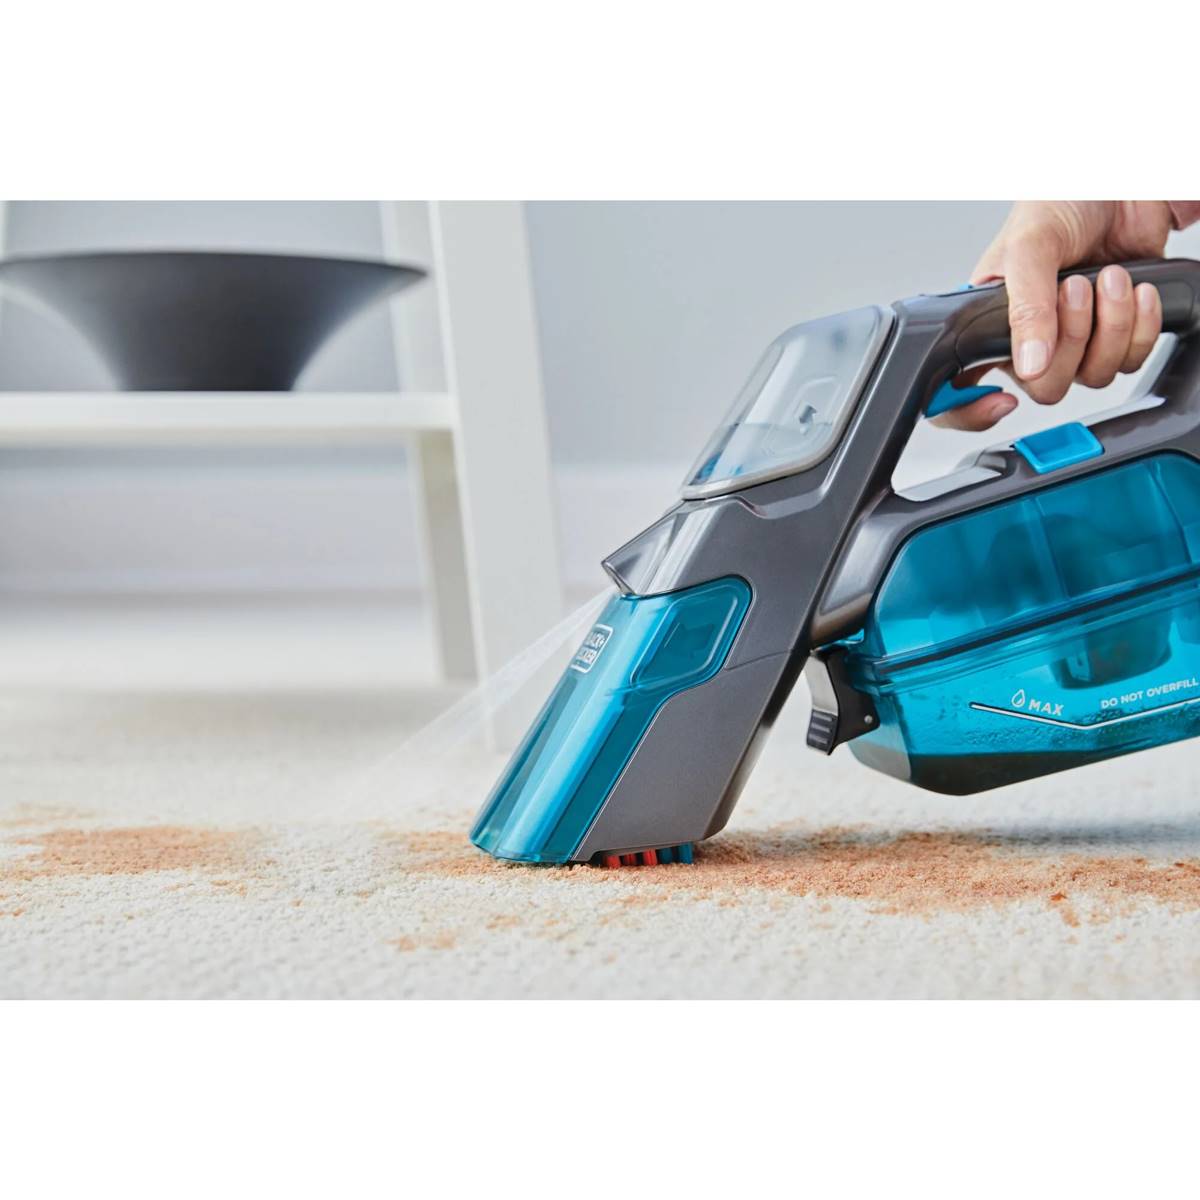 Black & Decker Spillbuster Cordless Spill & Spot Cleaner Vacuum